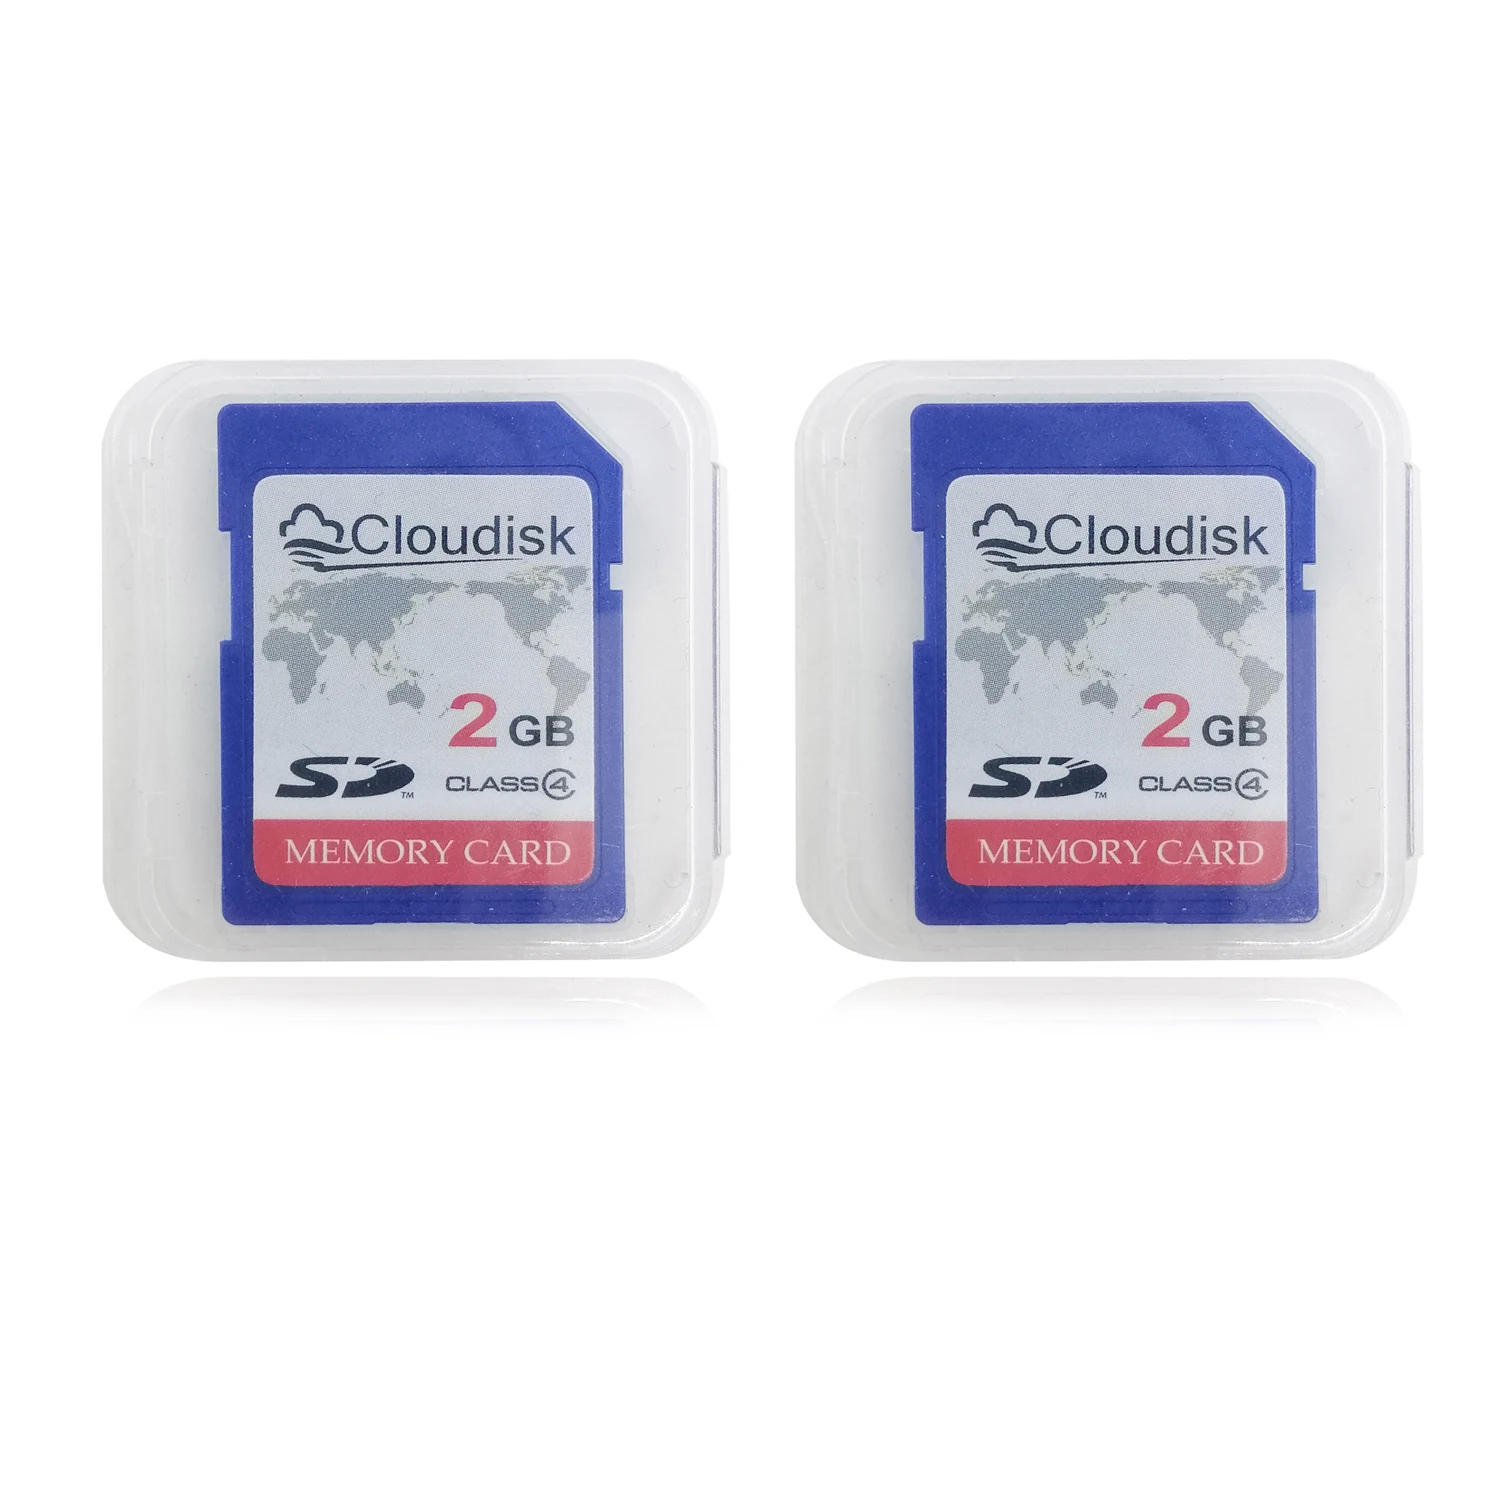 Cloudisk-cartão SD para câmera, mapa do mundo Motif, classe 4, 128MB cartões de memória, 1GB, 2pcs, 4GB, 128MB